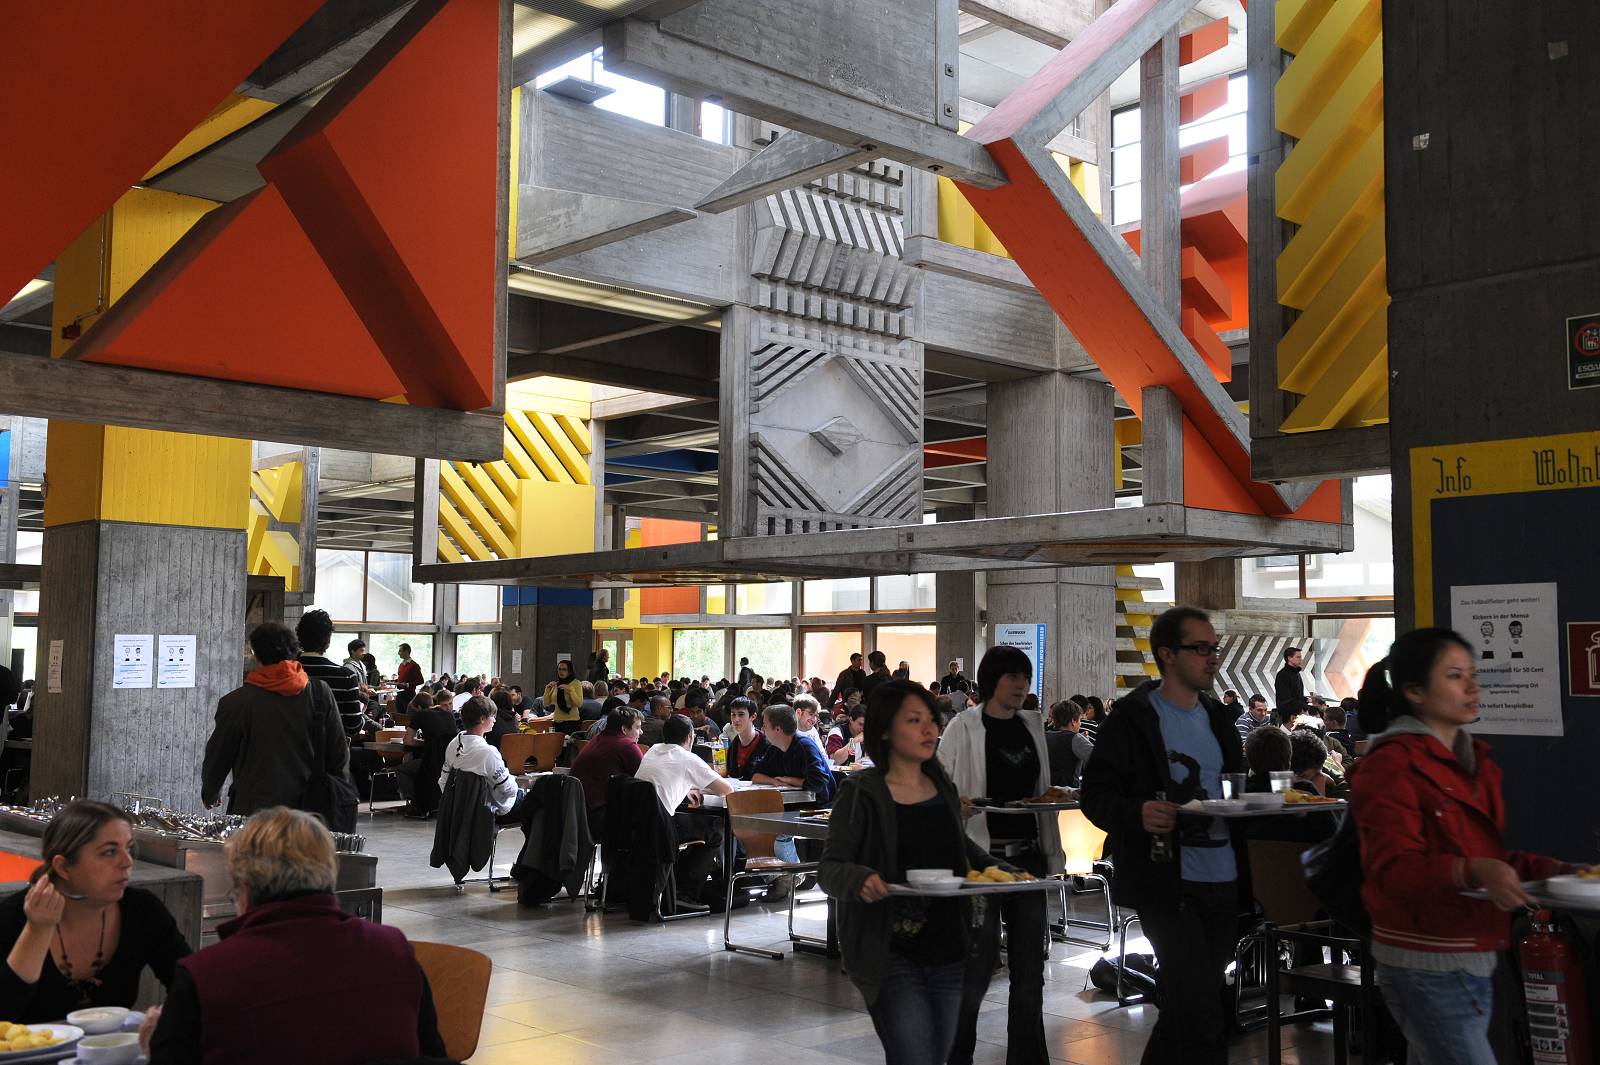 Blick in den Essenssaal einer Mensa, die Tische sind voll belegt, es laufen Studierende mit Essenstabletts durch die Gänge. Die Architektur ist aus Beton, dennoch bunt und modern.